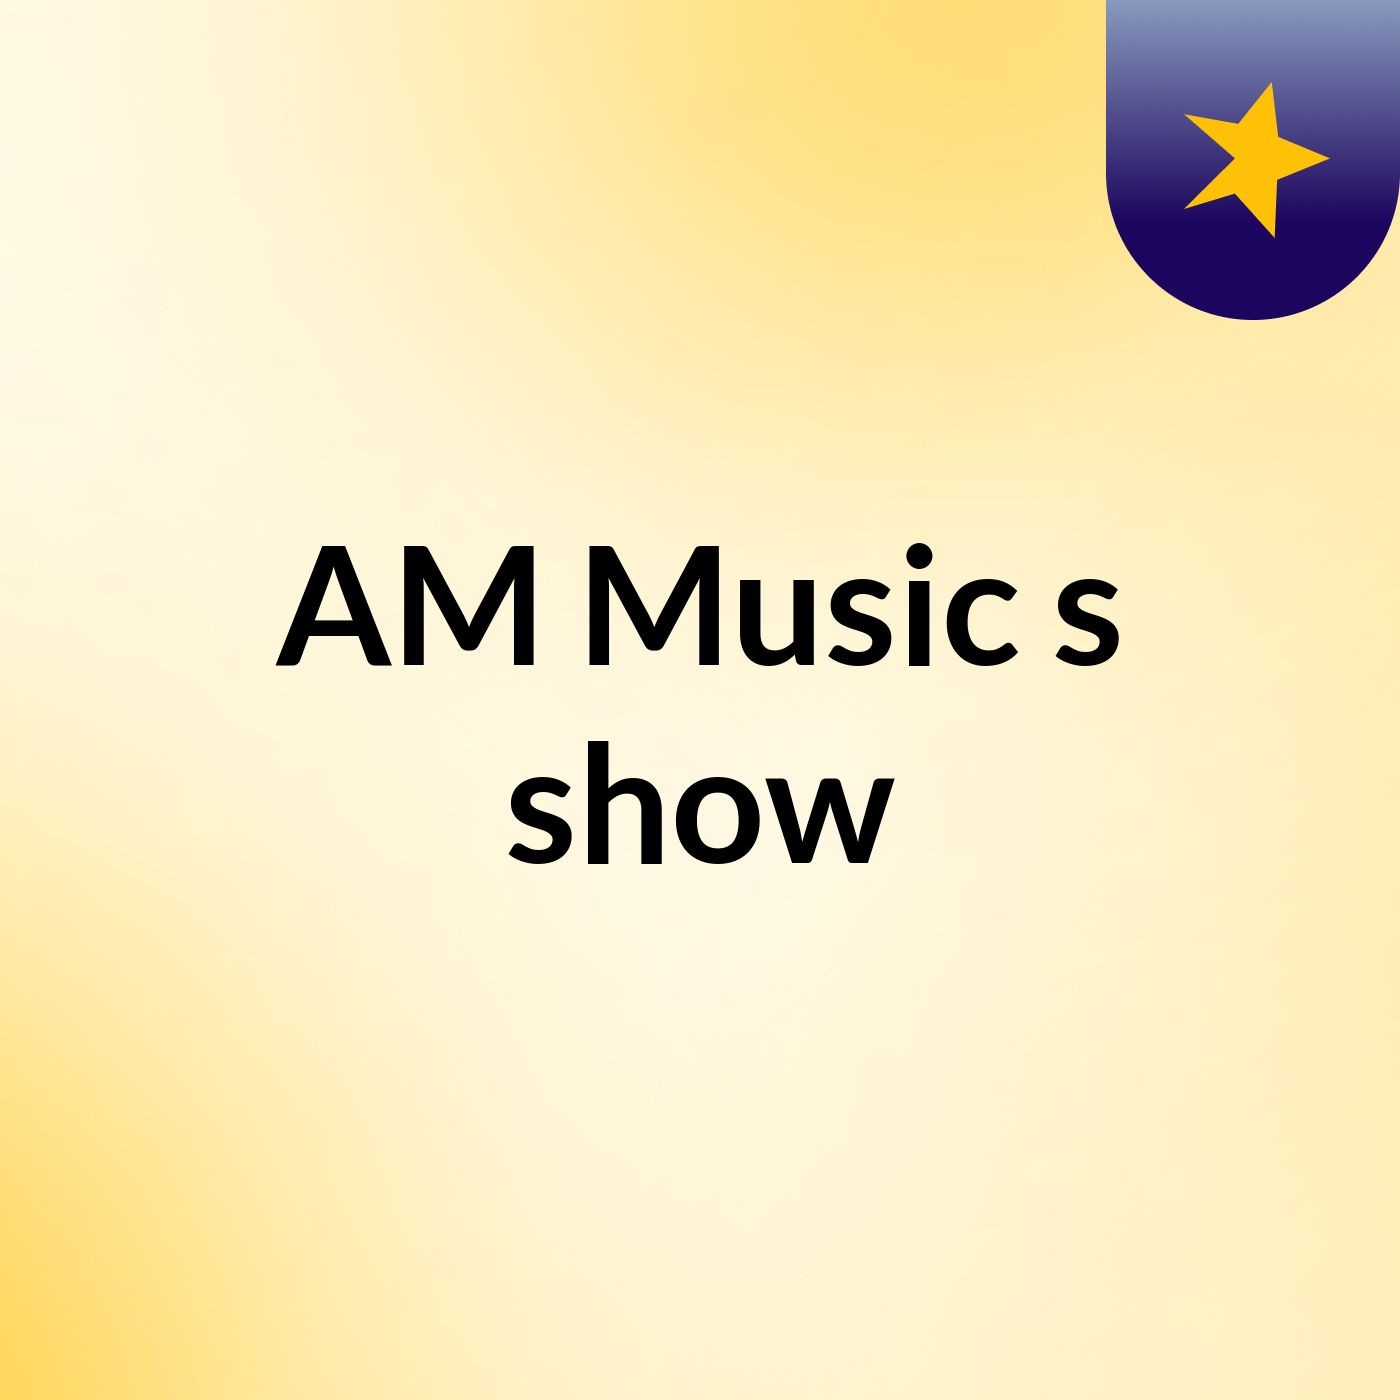 AM Music's show